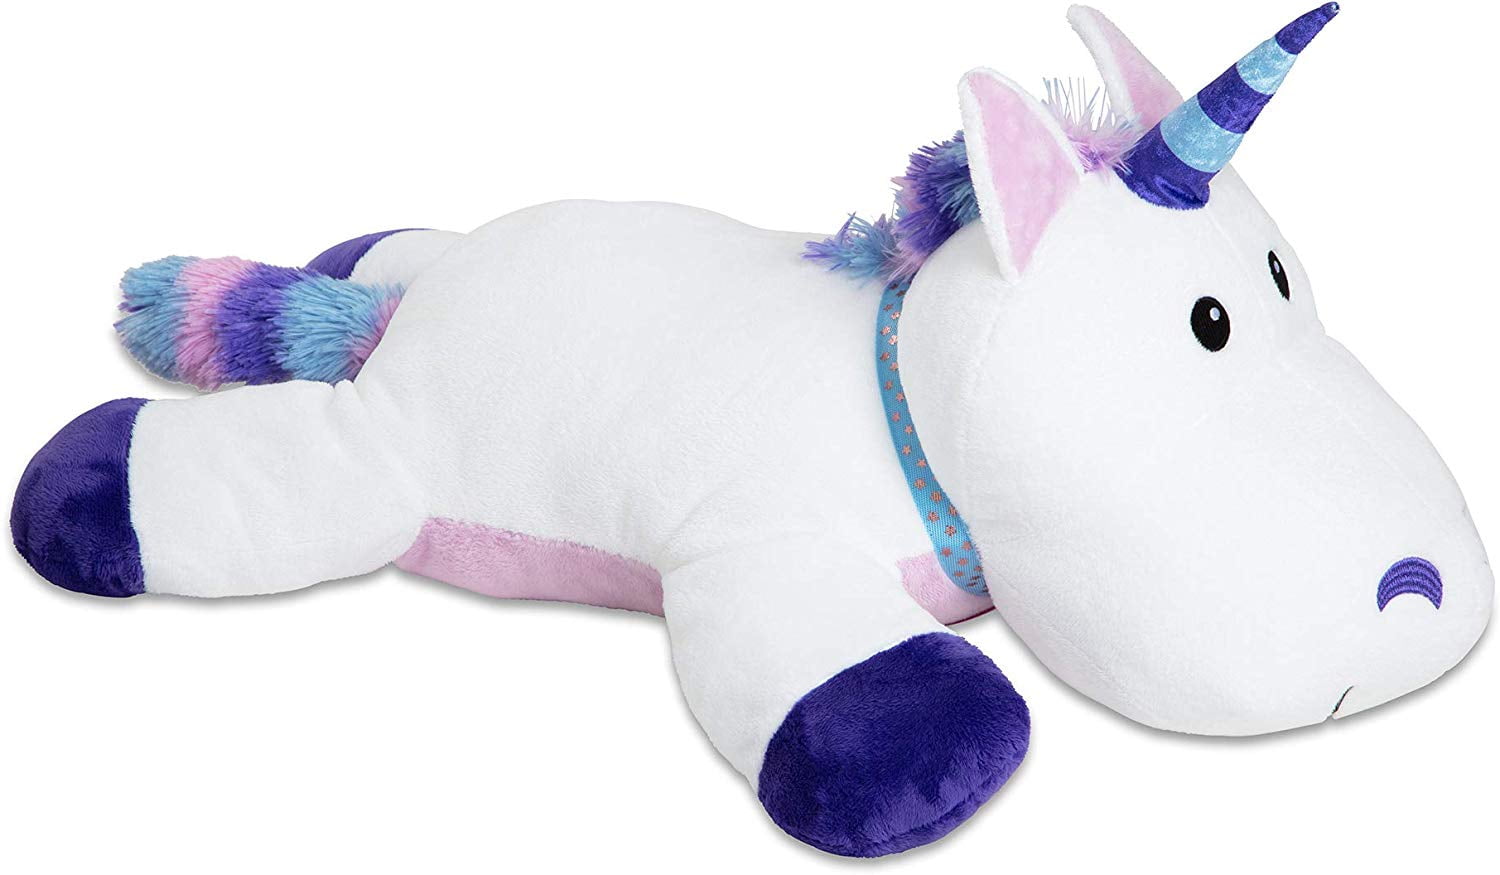 melissa and doug large plush unicorn